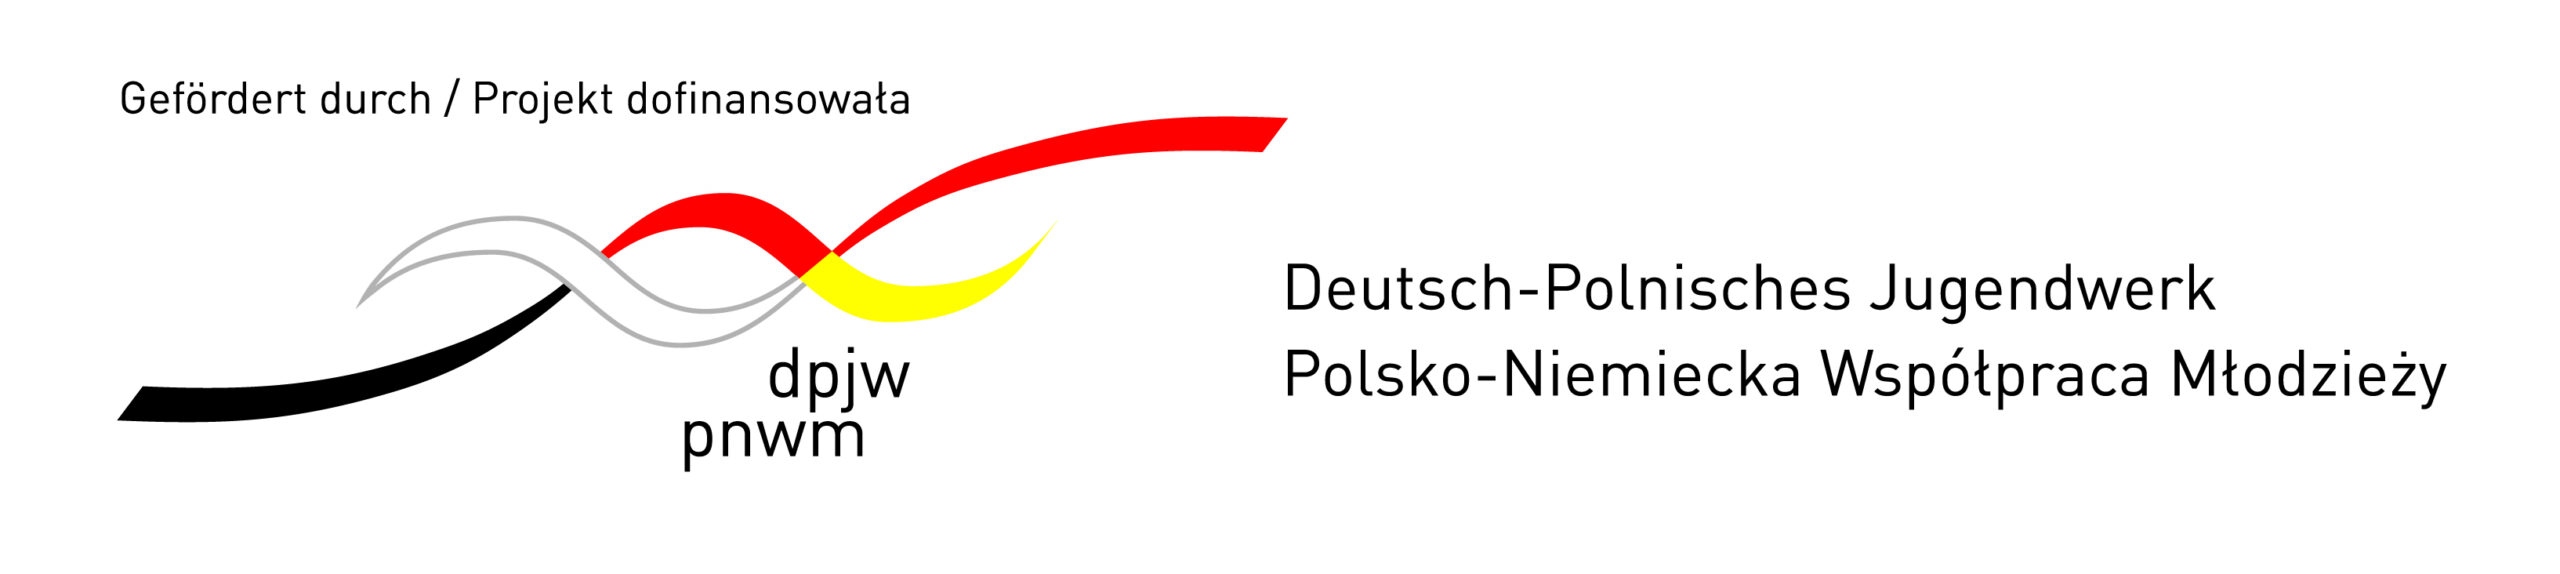 Logo PNWM POZIOM RGB do internetu z dopiskiem 1 002